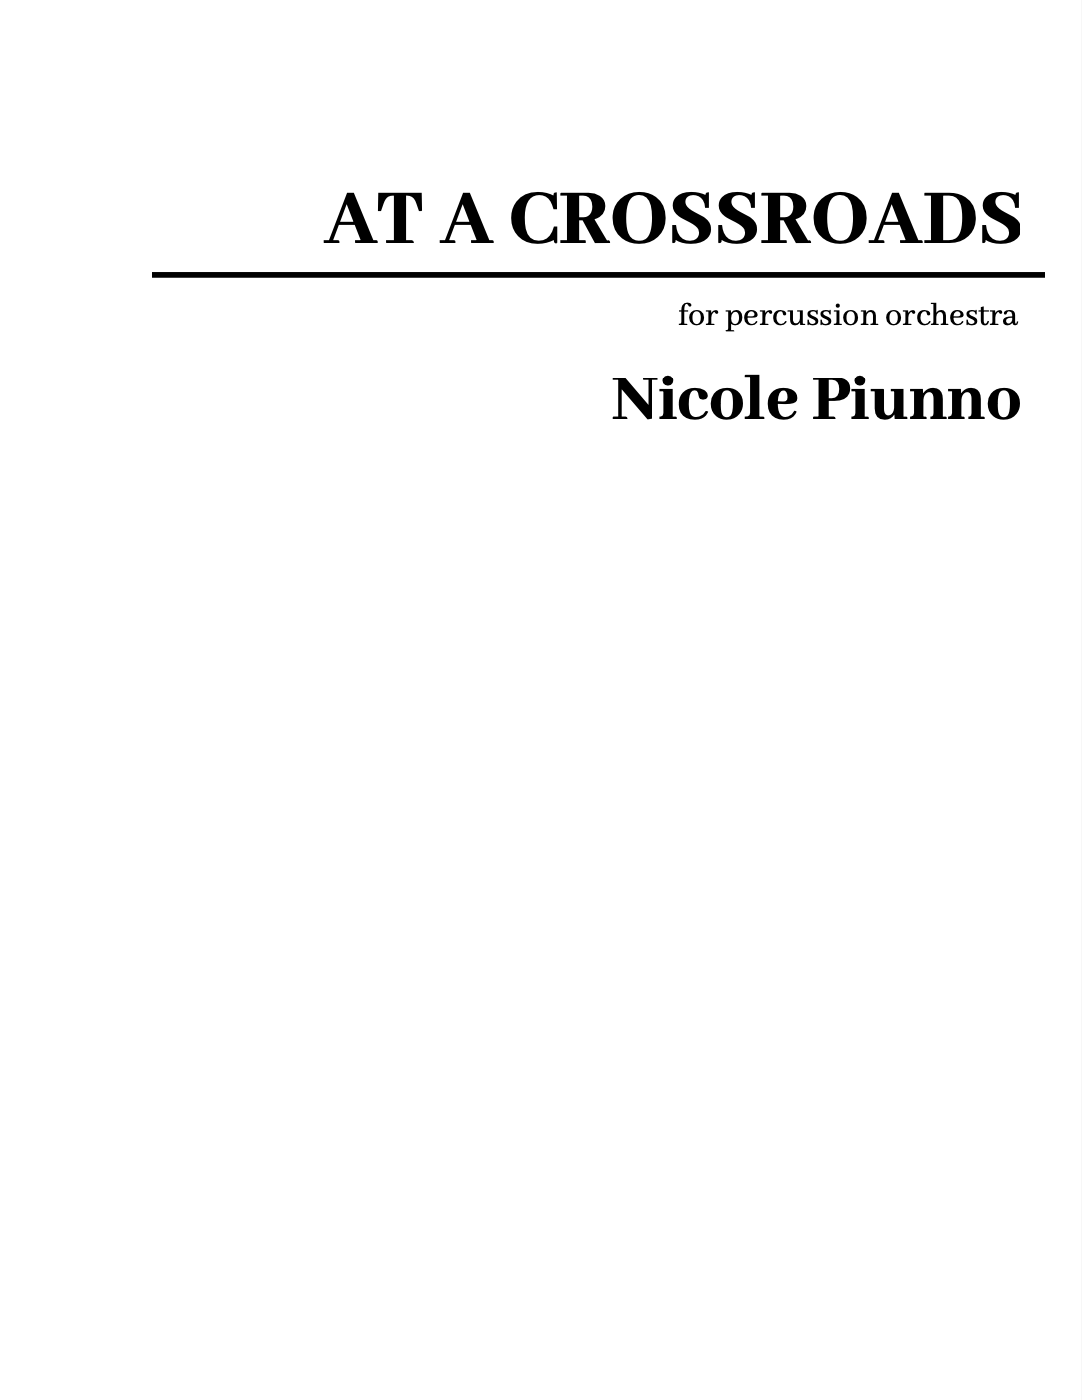 At A Crossroads by Nicole Piunno